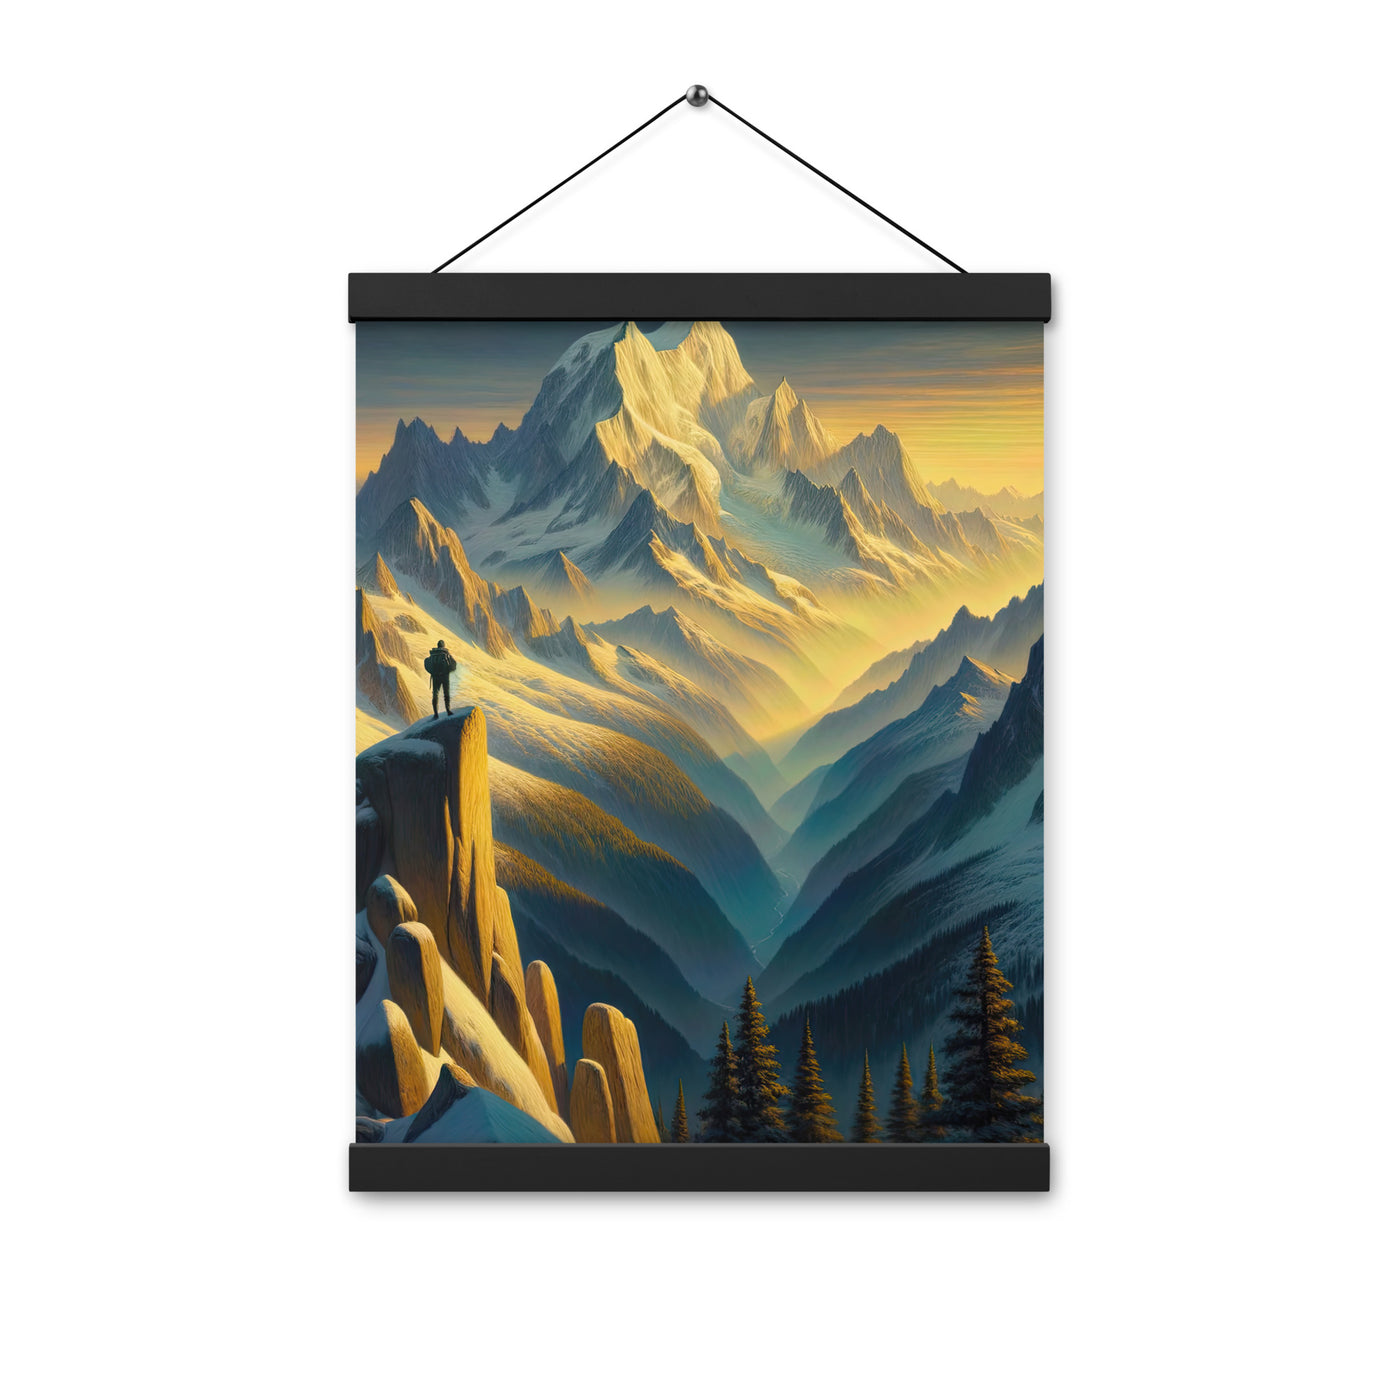 Ölgemälde eines Wanderers bei Morgendämmerung auf Alpengipfeln mit goldenem Sonnenlicht - Premium Poster mit Aufhängung wandern xxx yyy zzz 30.5 x 40.6 cm